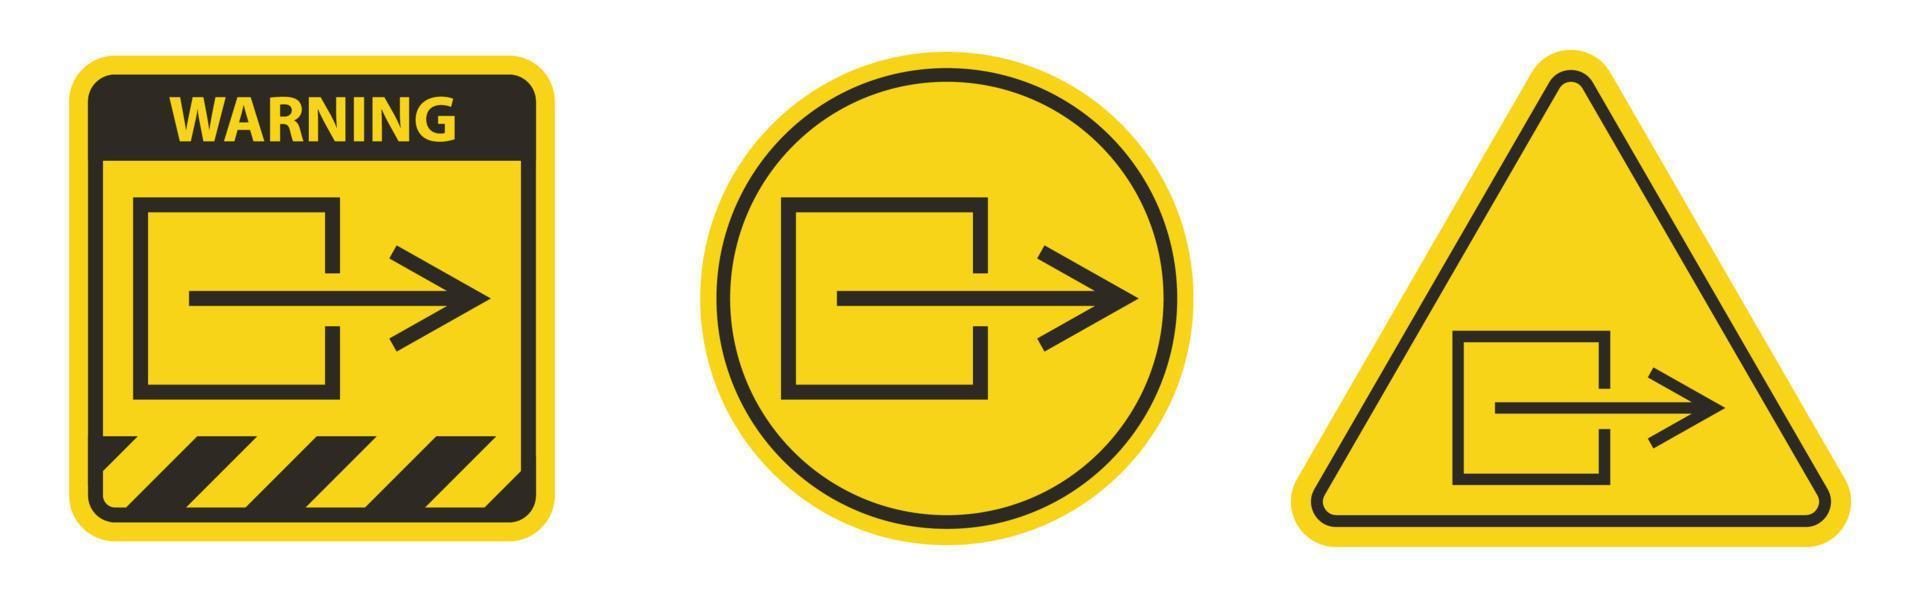 salida salida signo de símbolo no eléctrico, ilustración vectorial, aislar en la etiqueta de fondo blanco. Eps10 vector